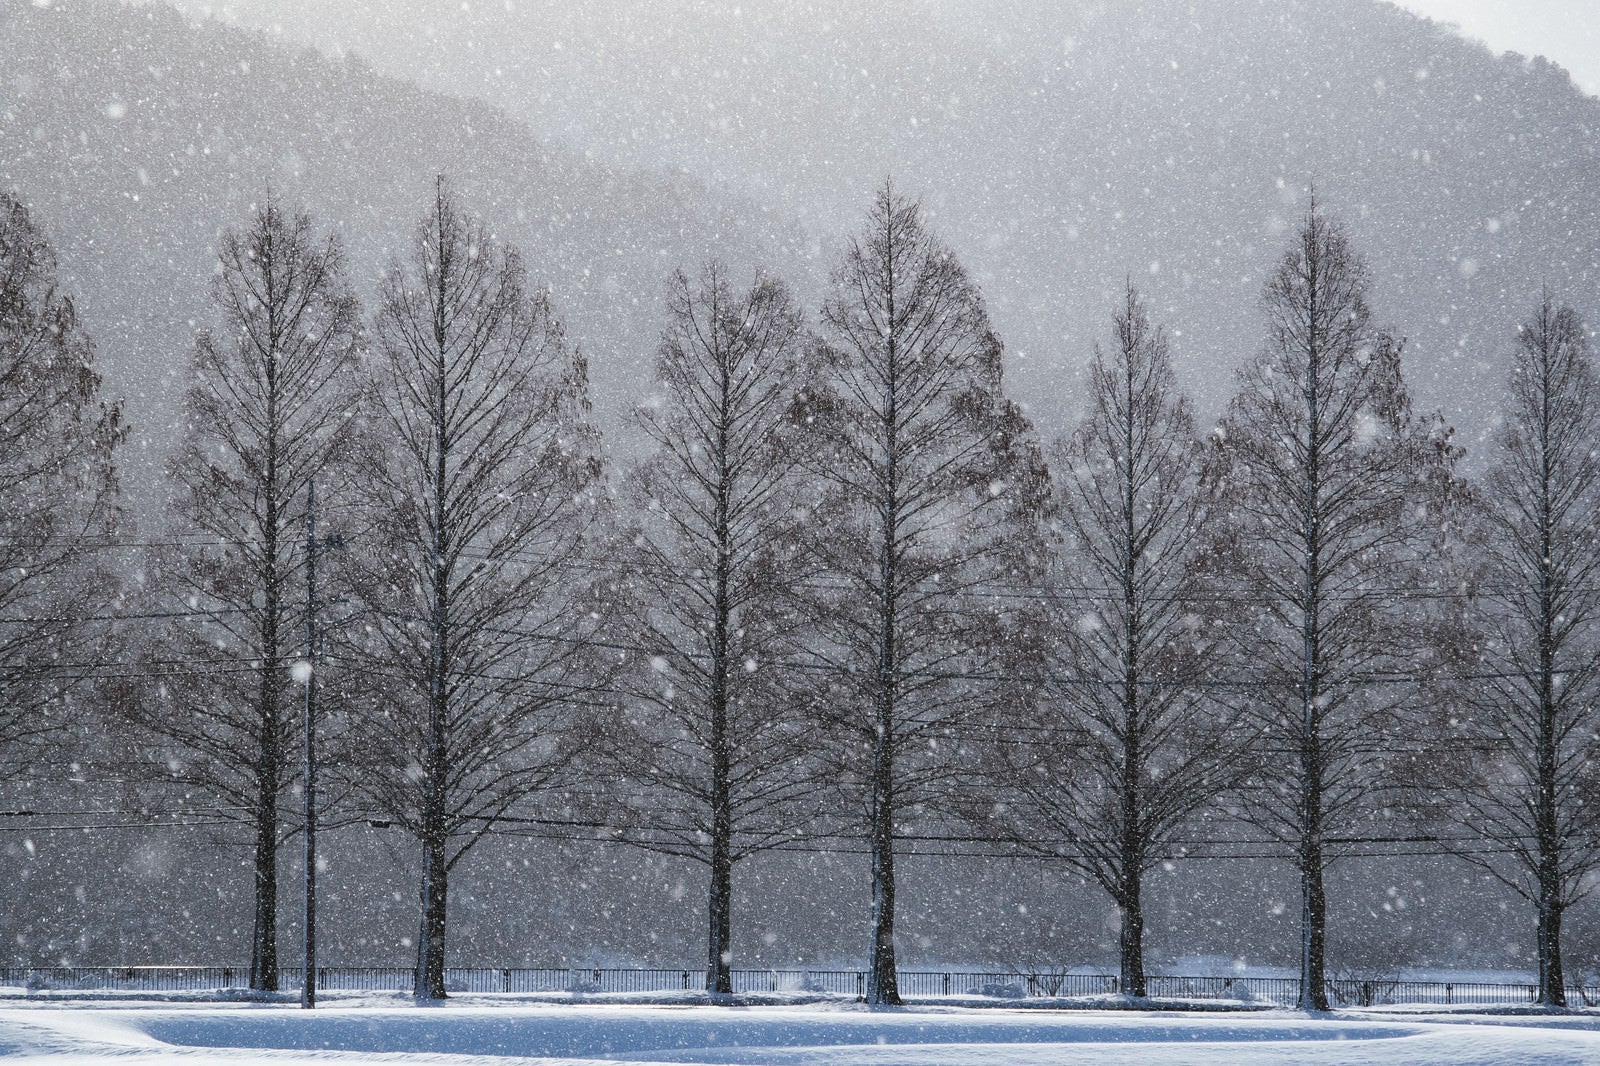 「メタセコイヤと雪の幻想的な風景」の写真